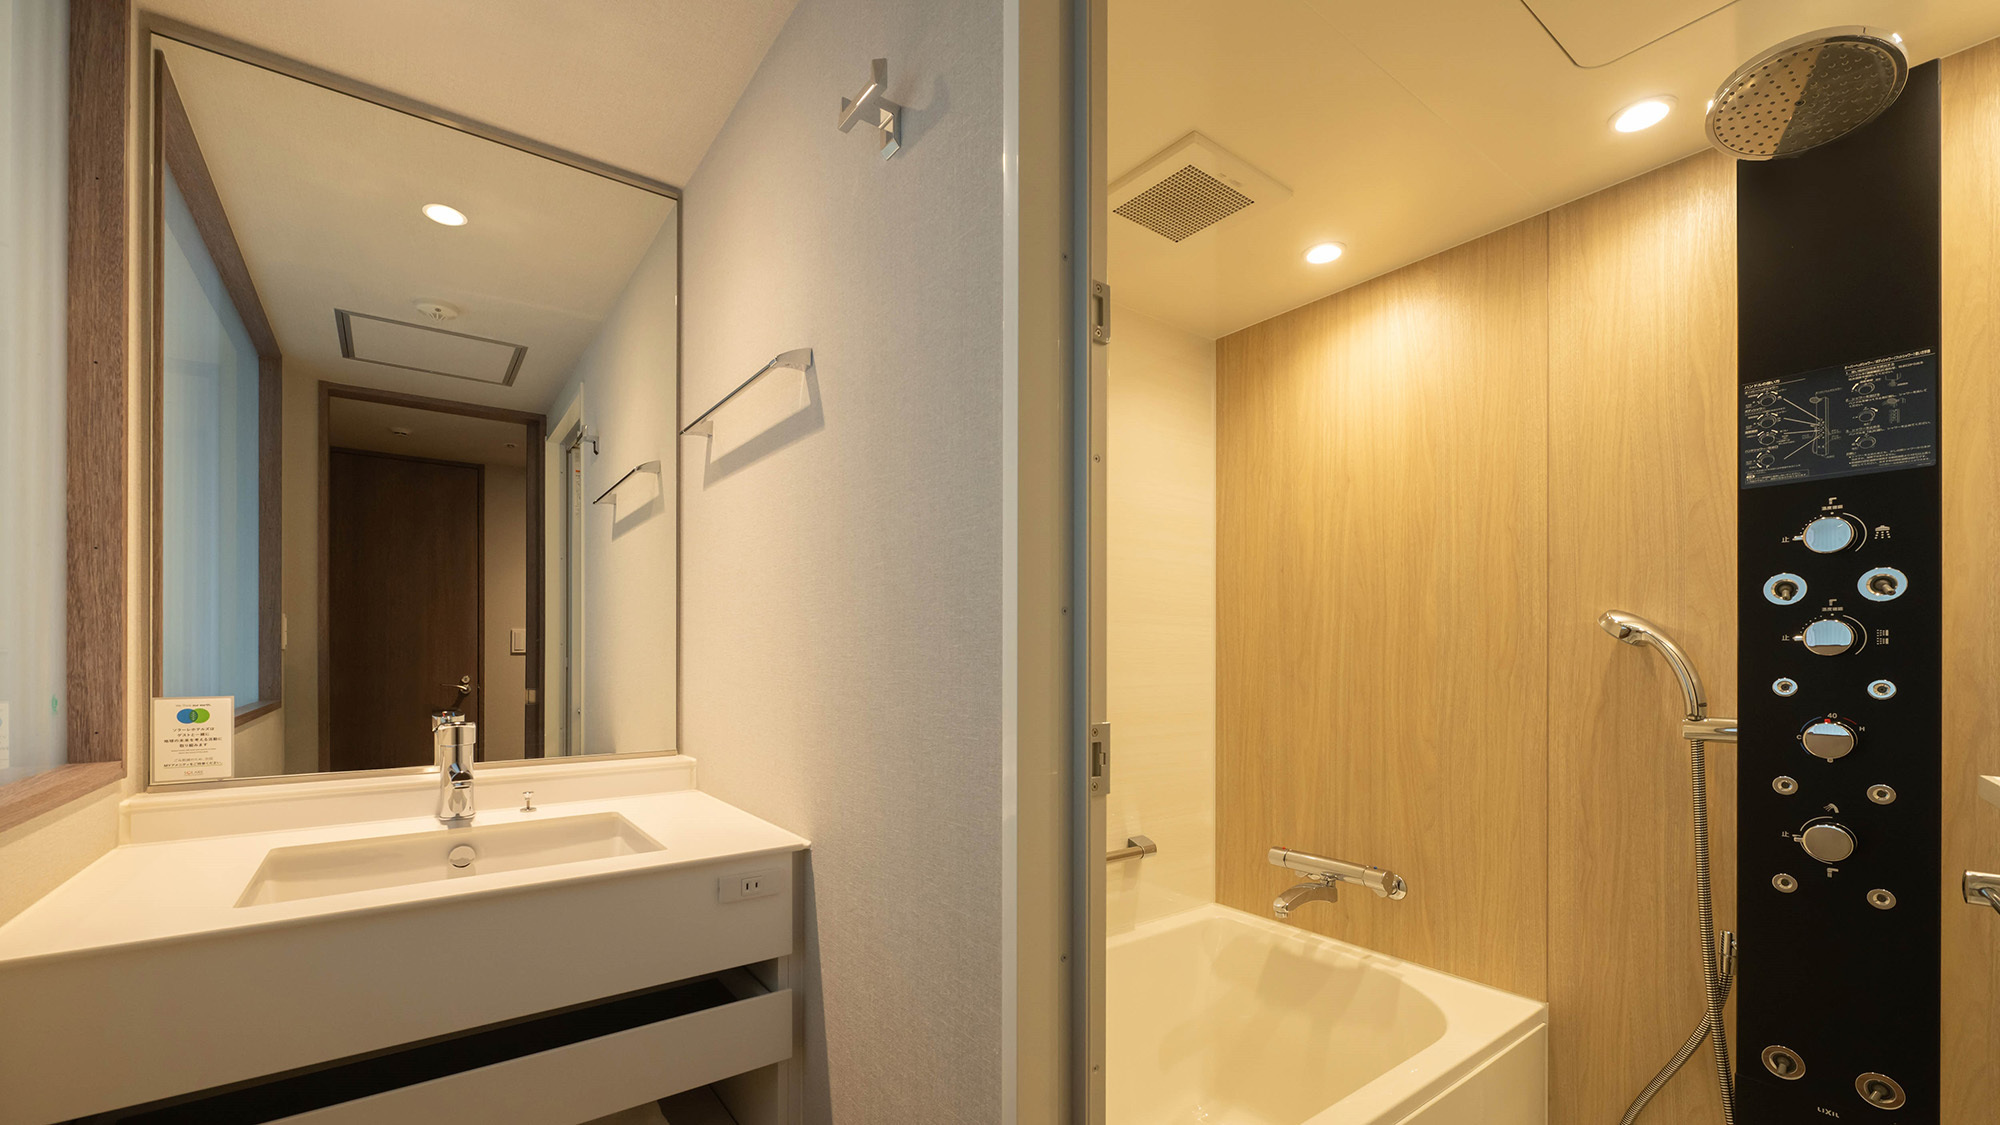 【浴室】洗い場付バス、独立トイレを配したシンプルで機能的な浴室ですオーバーヘッドシャワー付